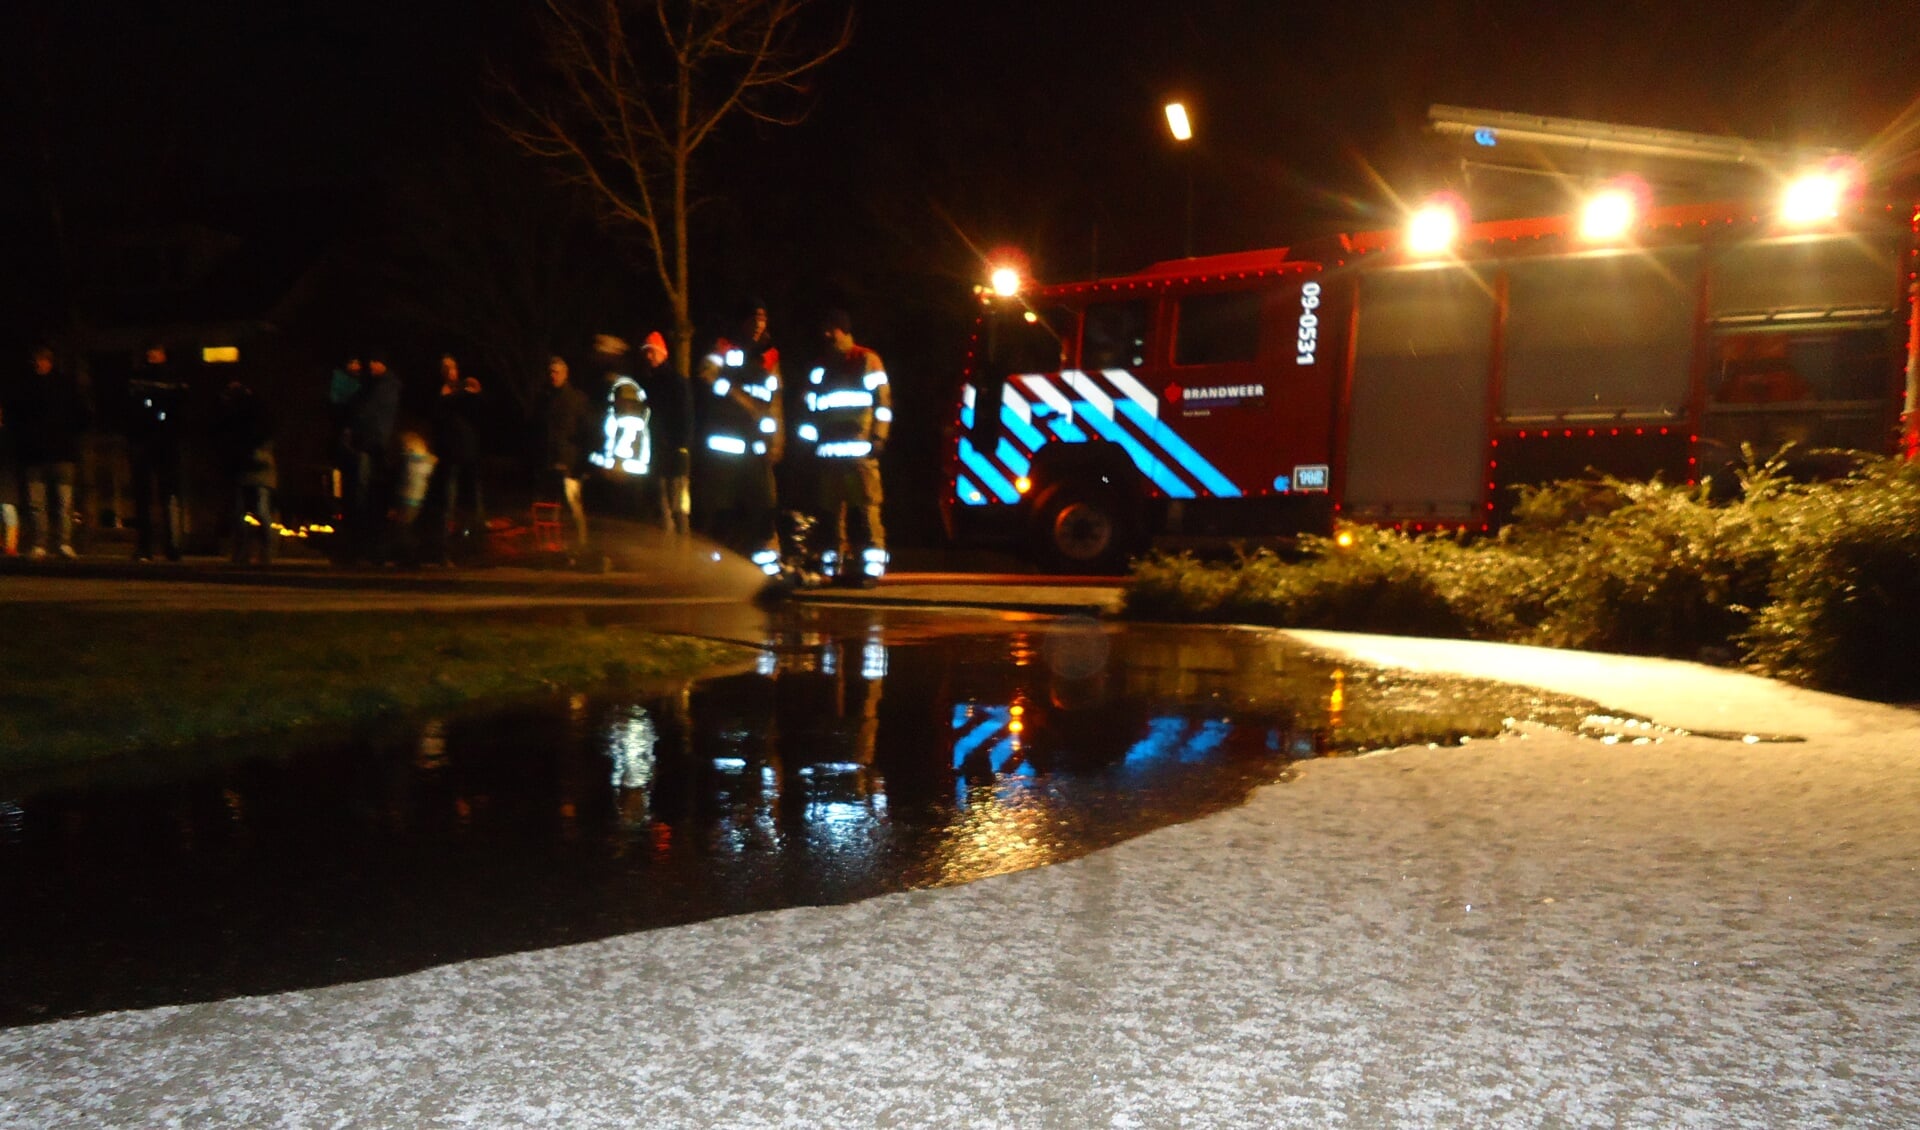                                De brandweer Bunnik kwam dinsdagavond een laag water op het speelveldje in de Engboogerd spuiten.